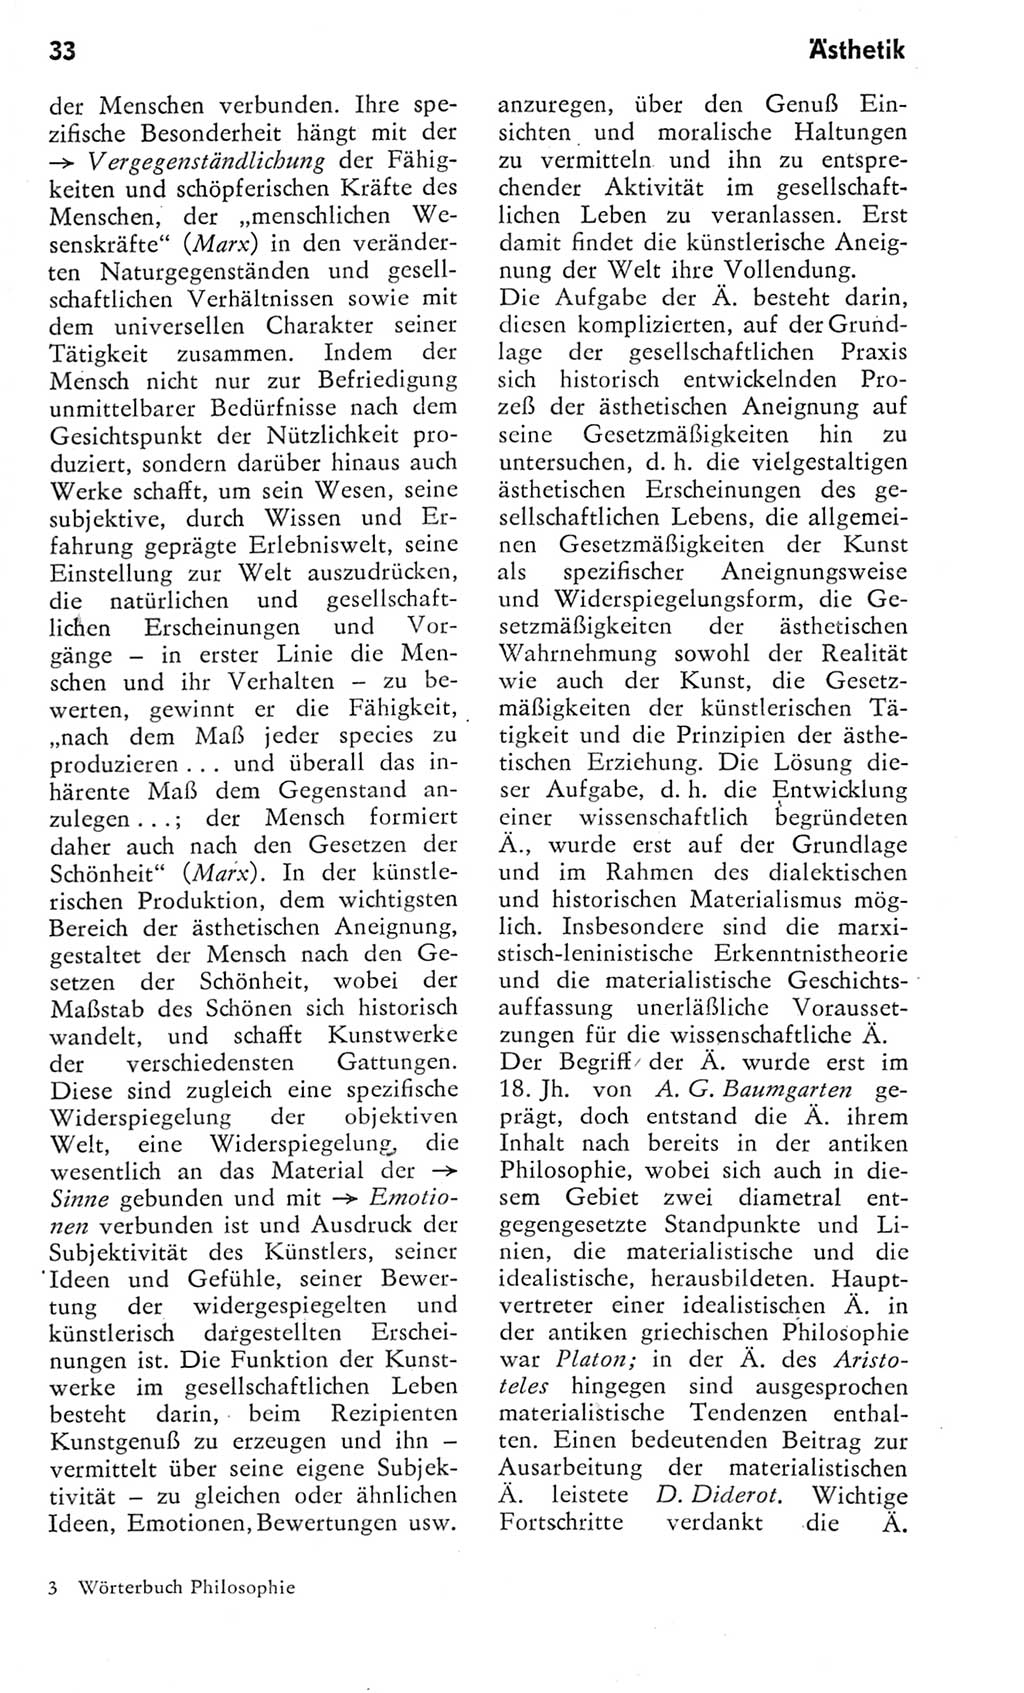 Kleines Wörterbuch der marxistisch-leninistischen Philosophie [Deutsche Demokratische Republik (DDR)] 1975, Seite 33 (Kl. Wb. ML Phil. DDR 1975, S. 33)